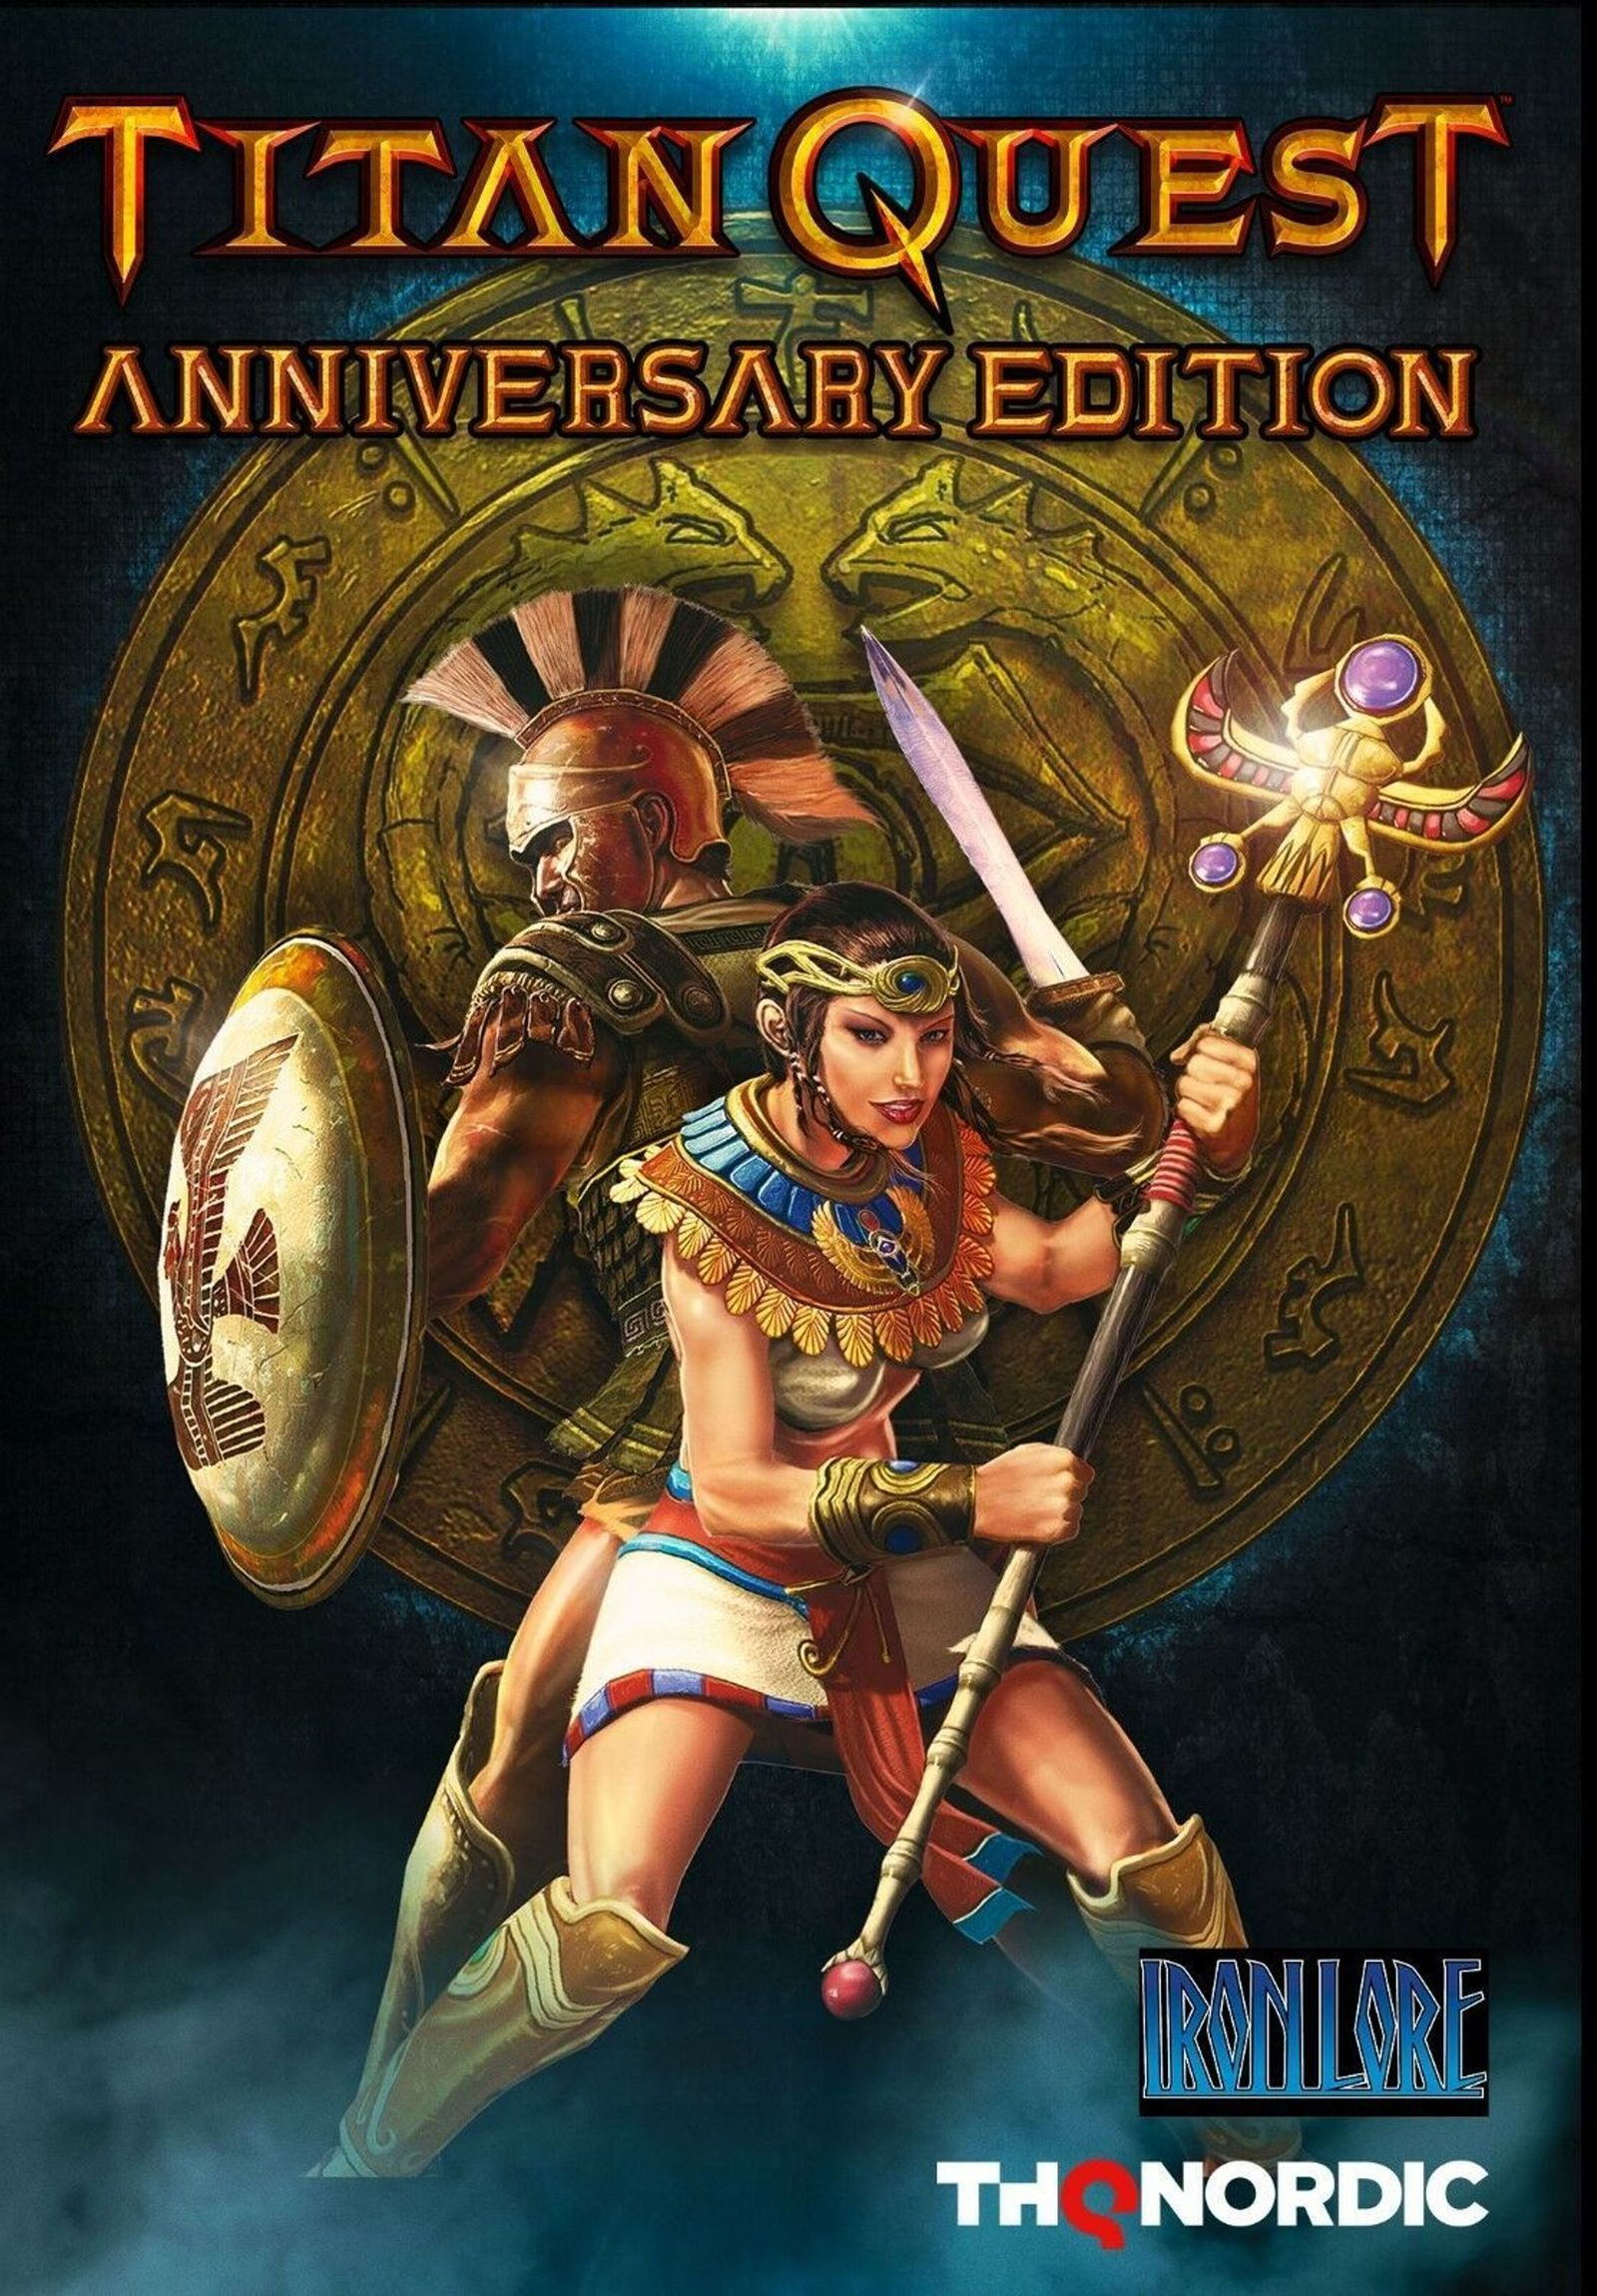 Edition [PC] Quest Titan - Anniversary